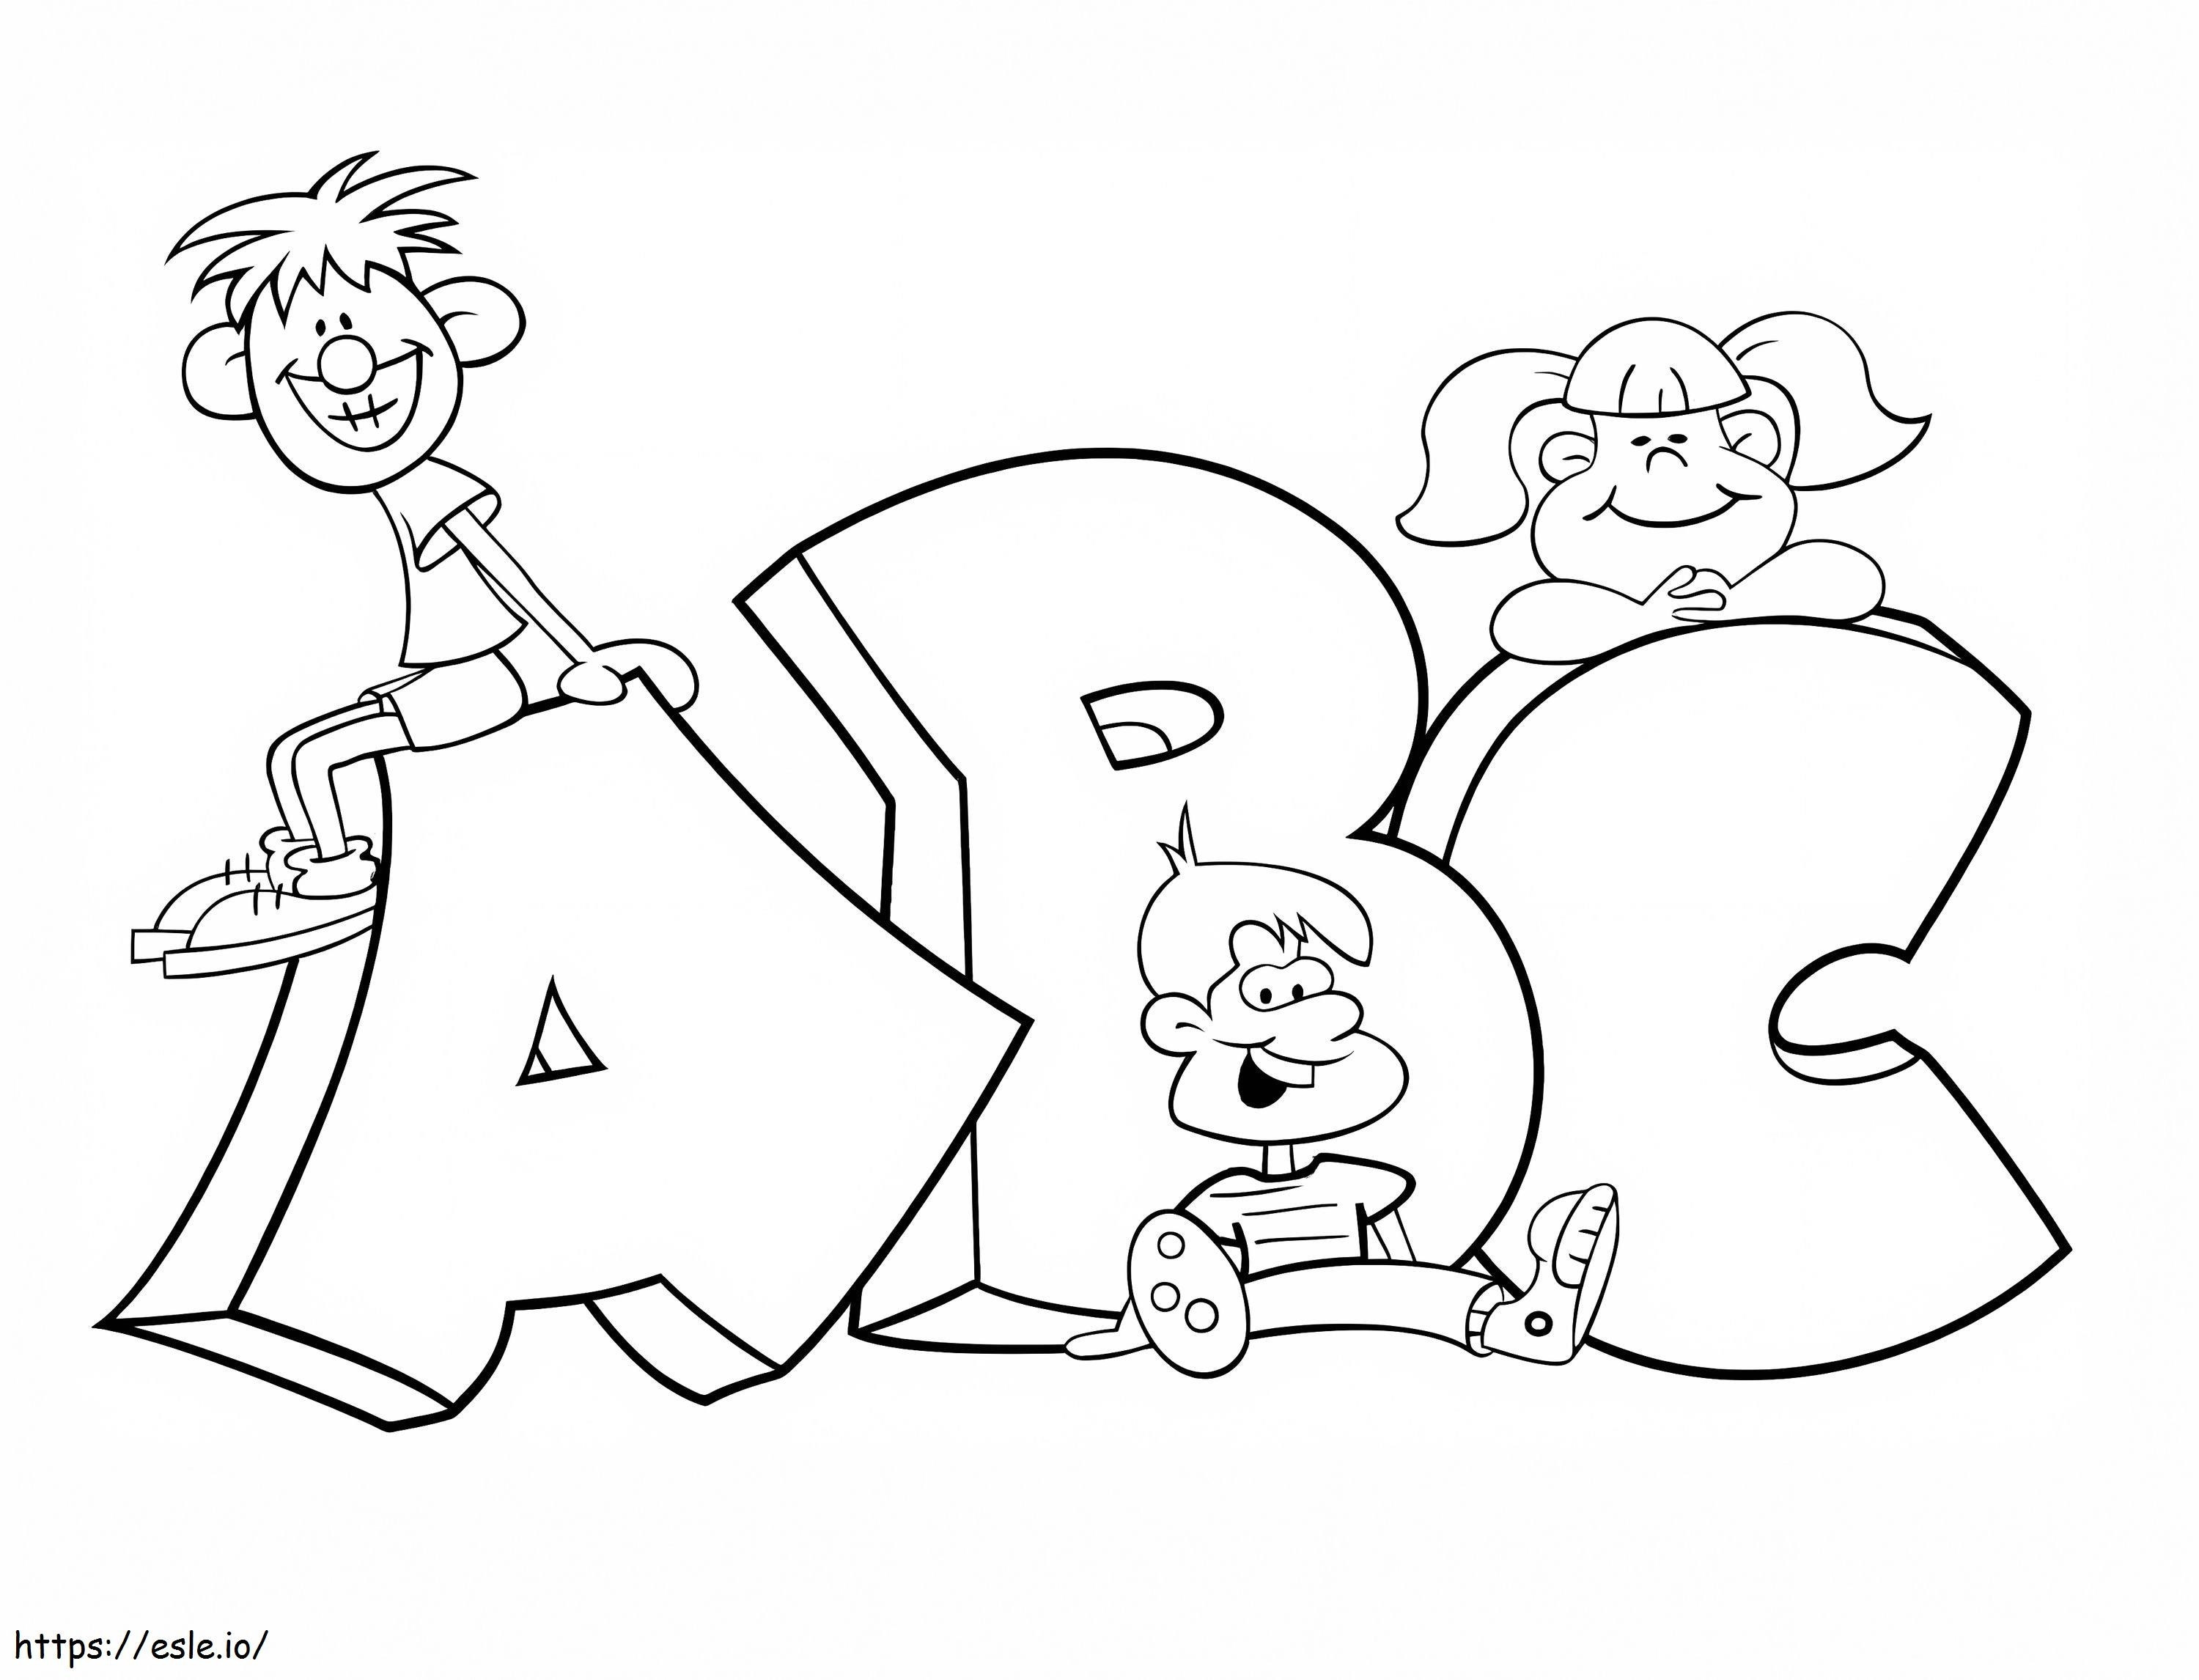 Drei Kinder mit ABC ausmalbilder